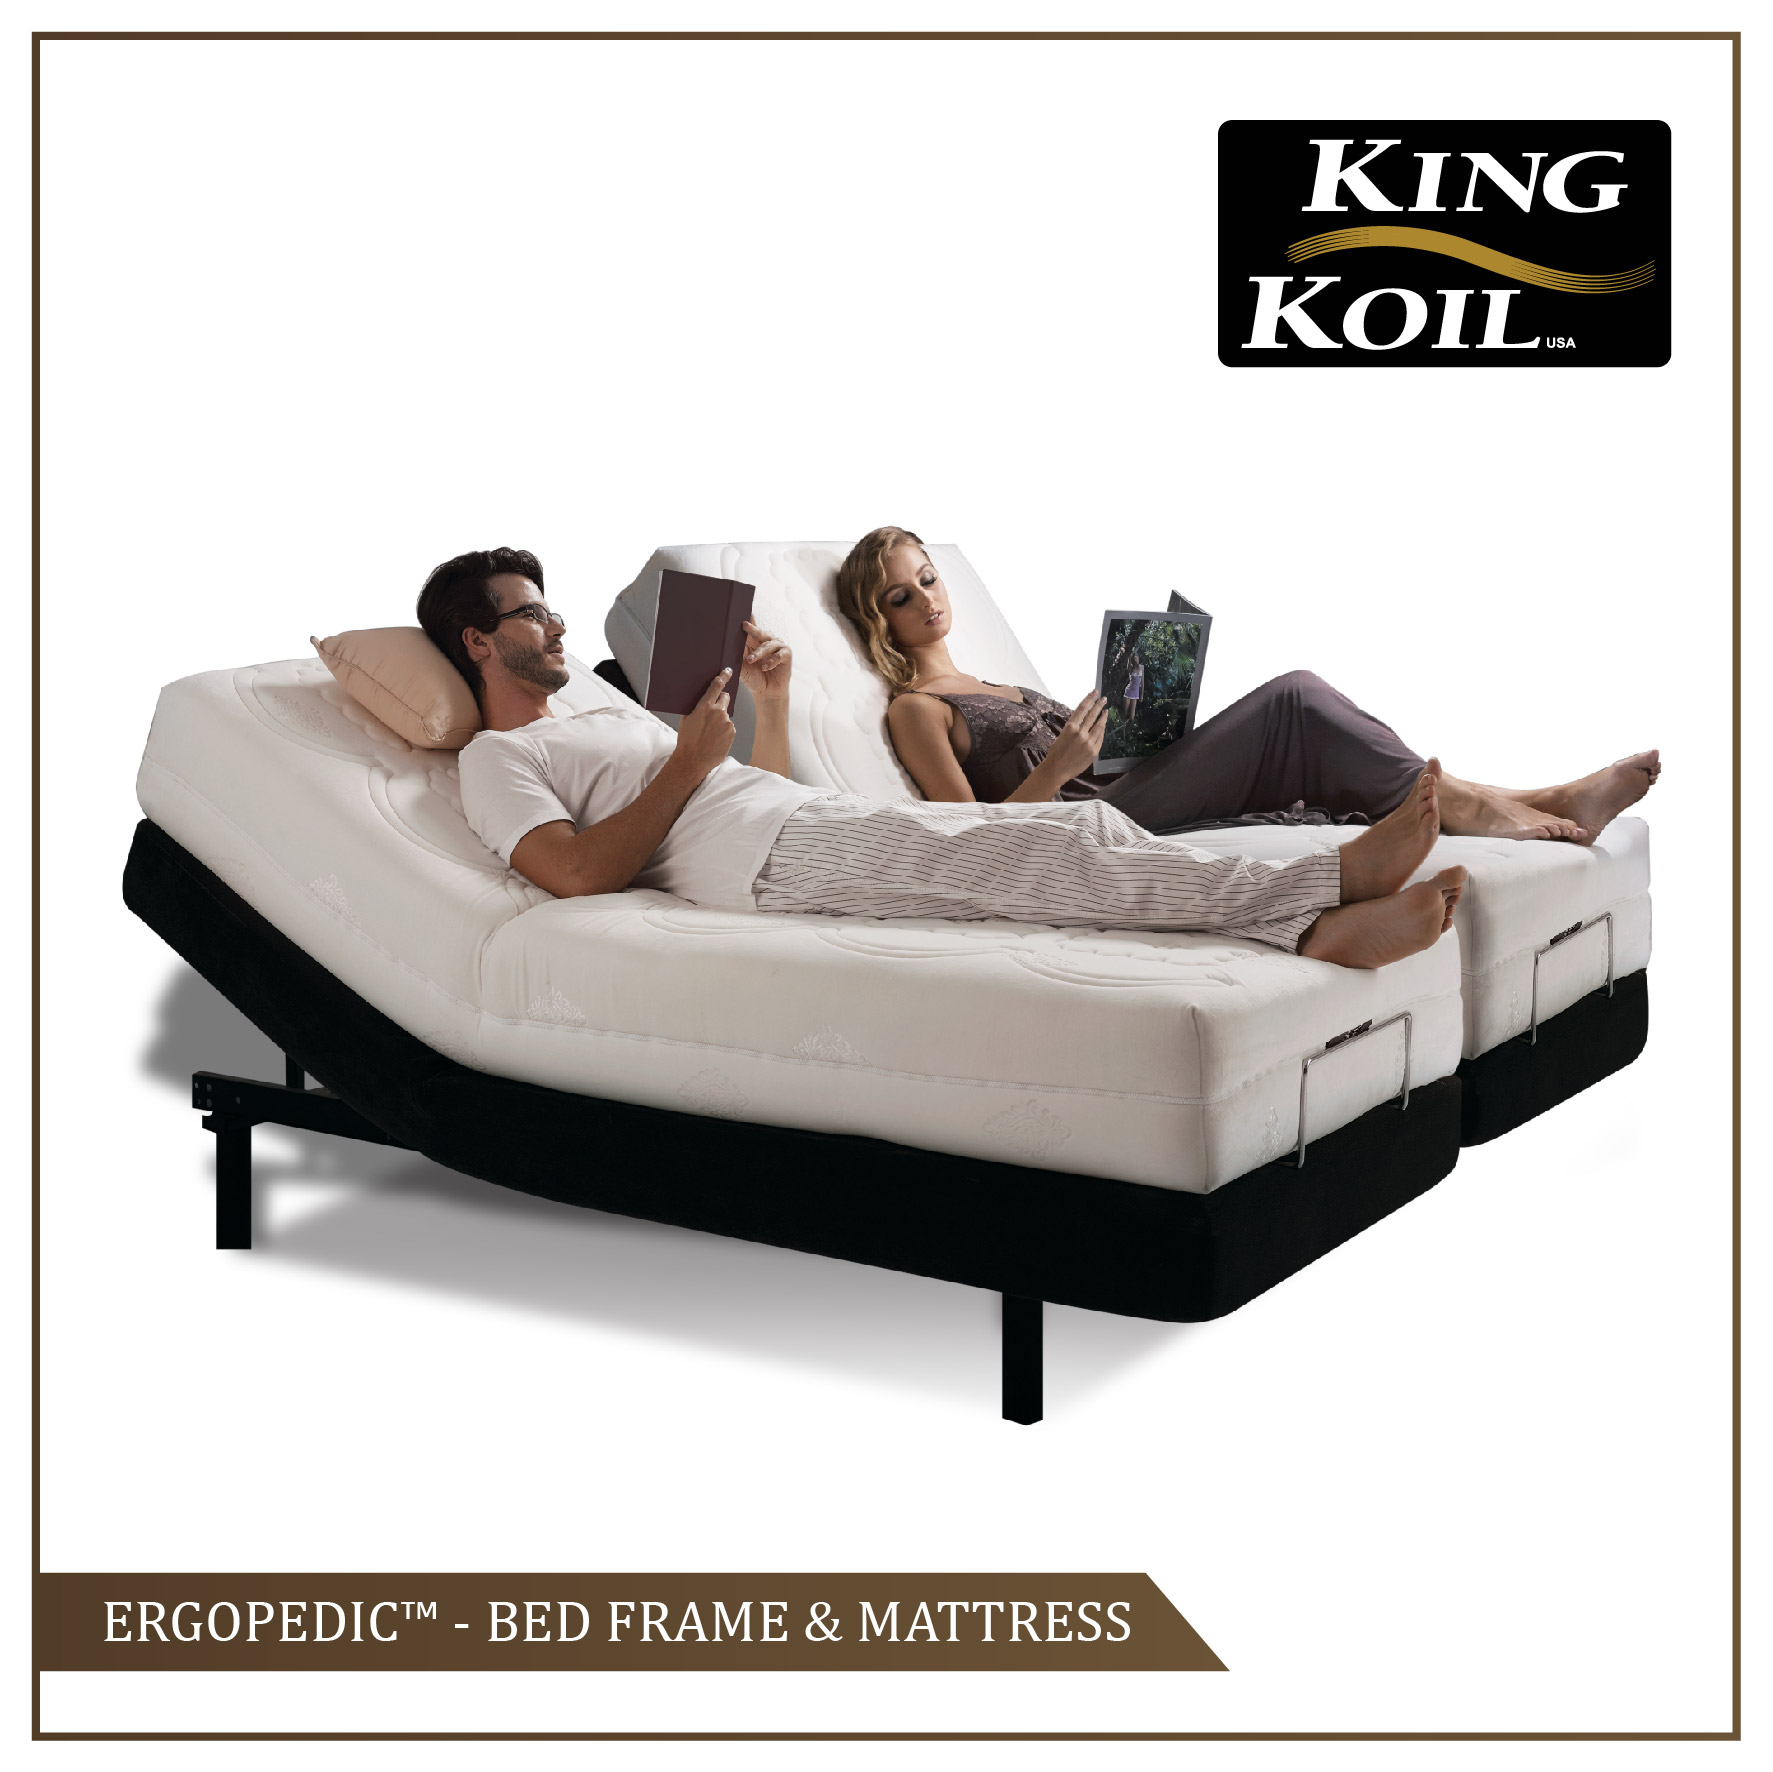 King Koil Ergo Pedic Adjustable Bed, King Koil Adjustable Bed Base